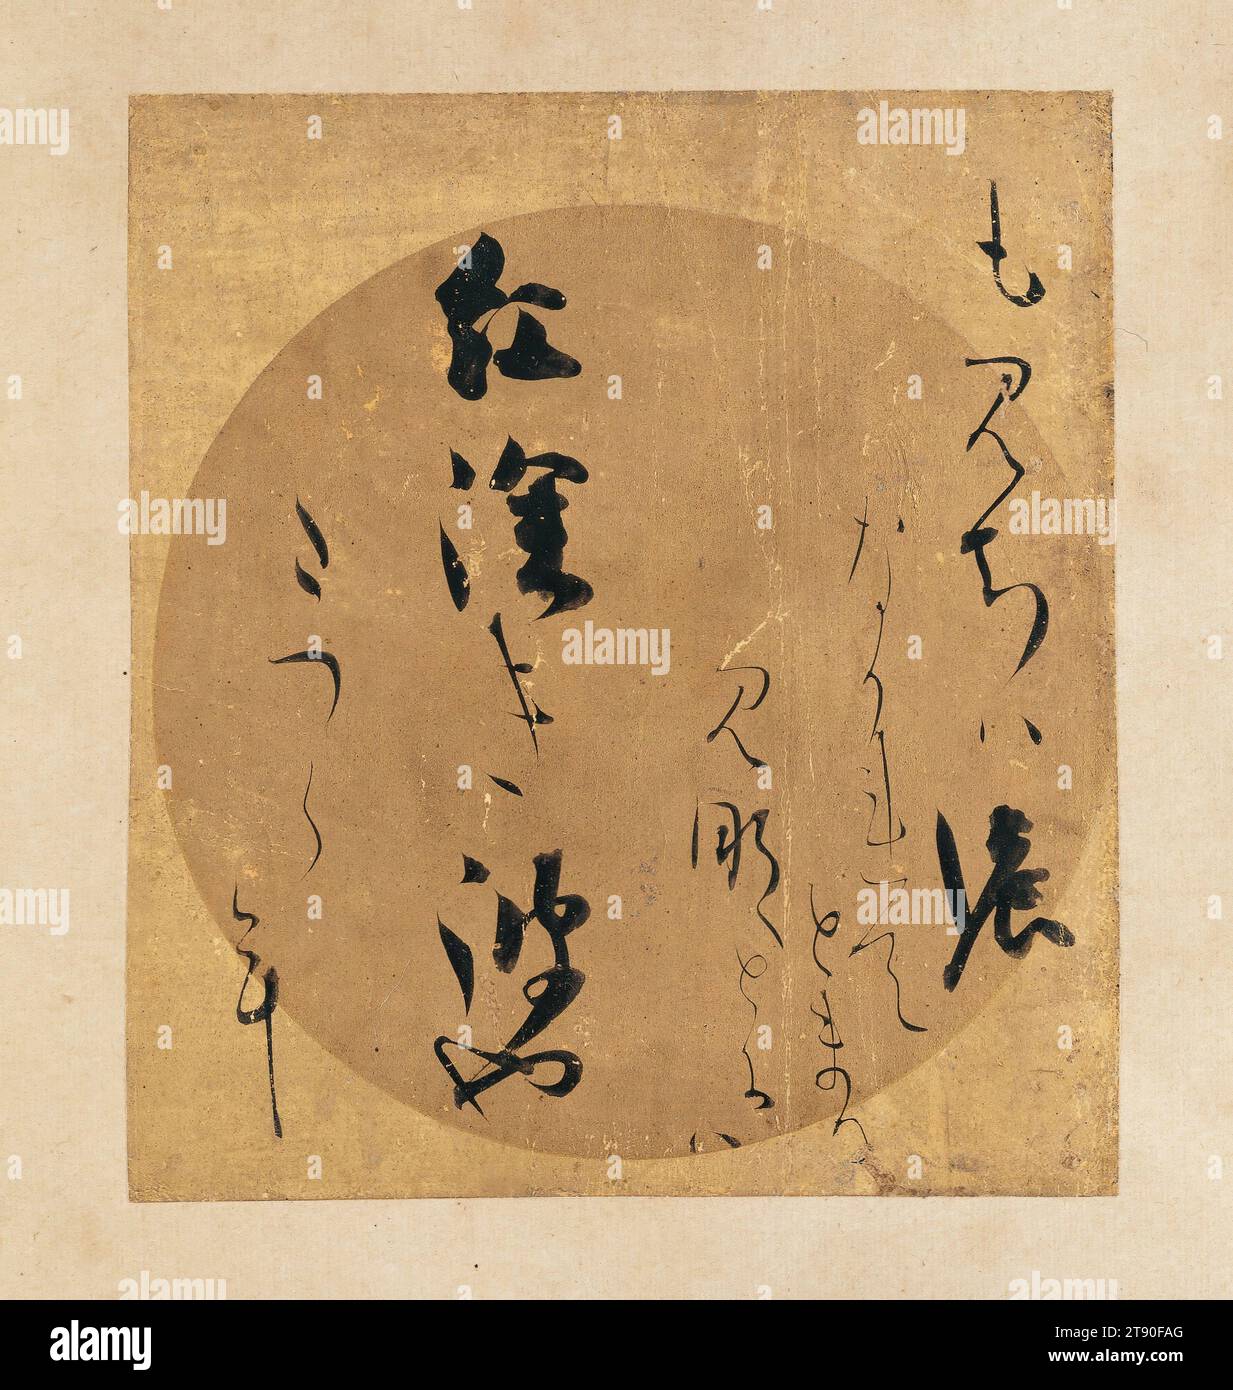 Poema della raccolta di poesie giapponesi dei tempi antichi e moderni (Kokin wakashū), primi anni '1610, Hon'ami Kōetsu; artista: Underpainting di Tawaraya Sōtatsu, giapponese, 1558 - 1637, 7 3/16 x 6 3/8 in. (18,26 x 16,19 cm) (immagine), inchiostro e oro su carta decorata d'oro, Giappone, XVII secolo, queste due carte poesie una volta facevano parte di un insieme di trentasei di queste carte, che potrebbero essere state incollate su paraventi. Le carte erano una collaborazione tra il celebre calligrafo Hōn'ami Kōetsu che spazzolò antiche poesie giapponesi su carte decorate dal pittore Tawaraya Sōtatsu. Foto Stock